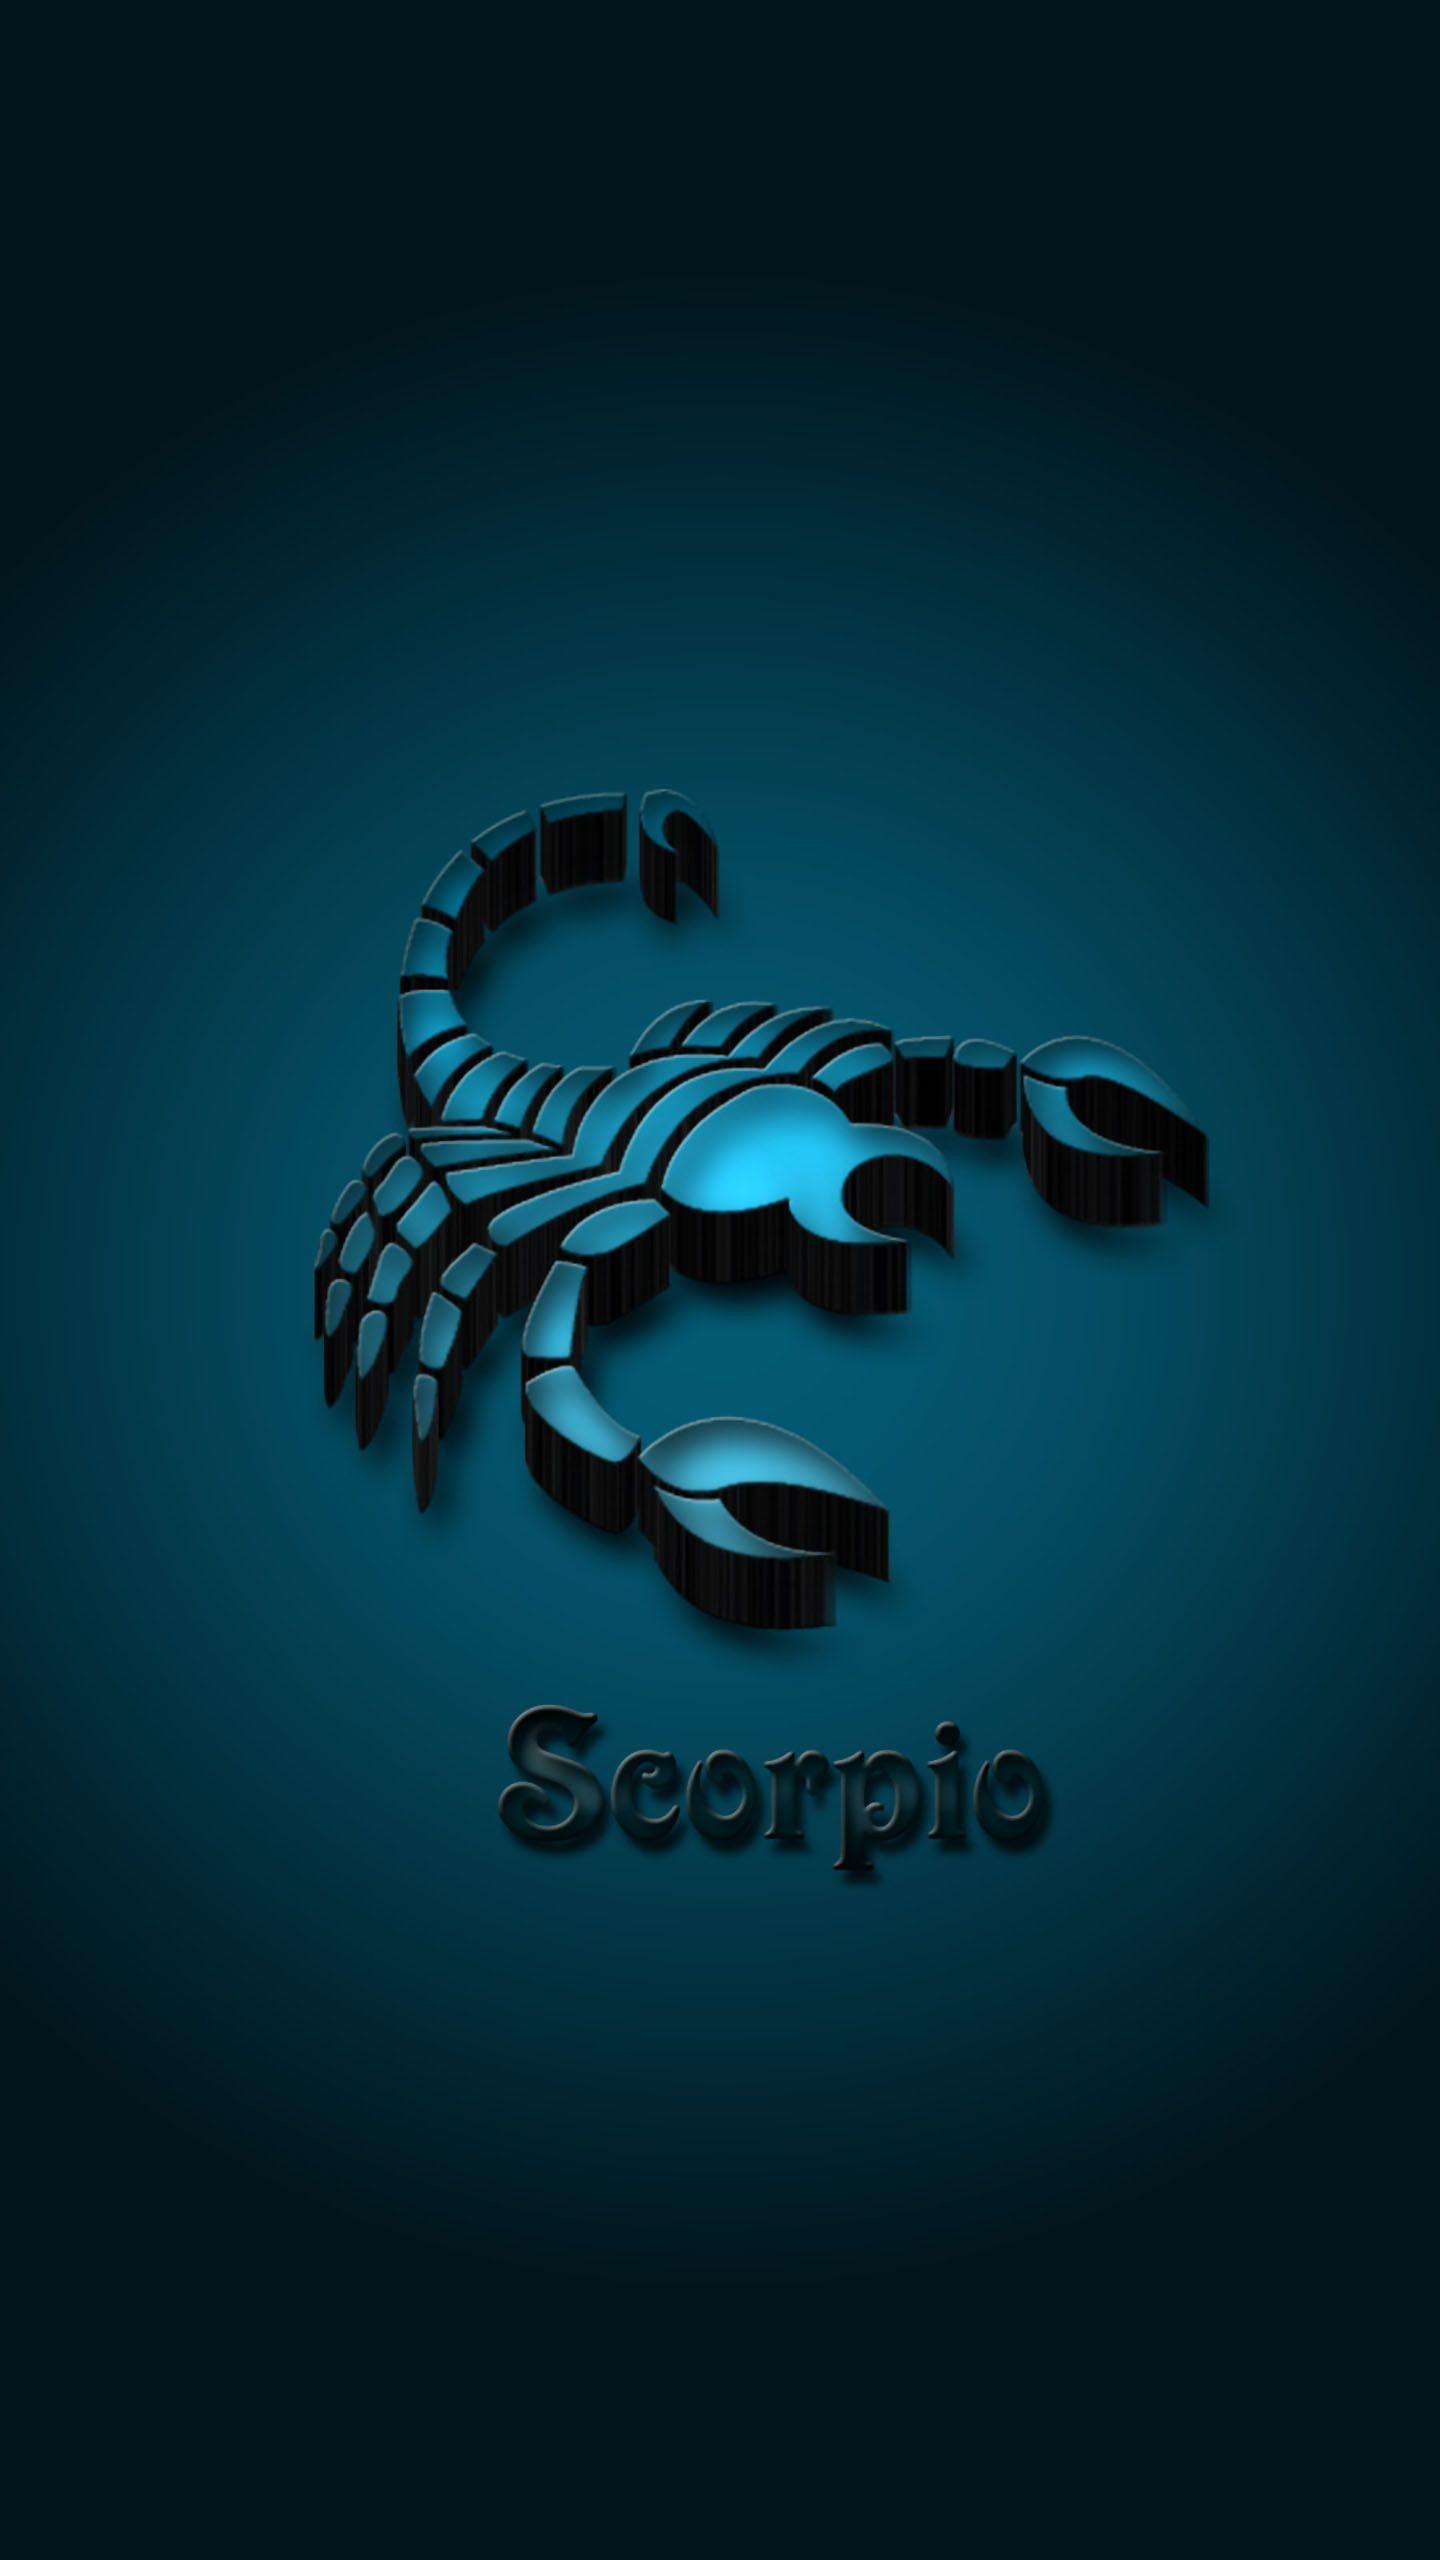 74+] Scorpion Wallpapers - WallpaperSafari